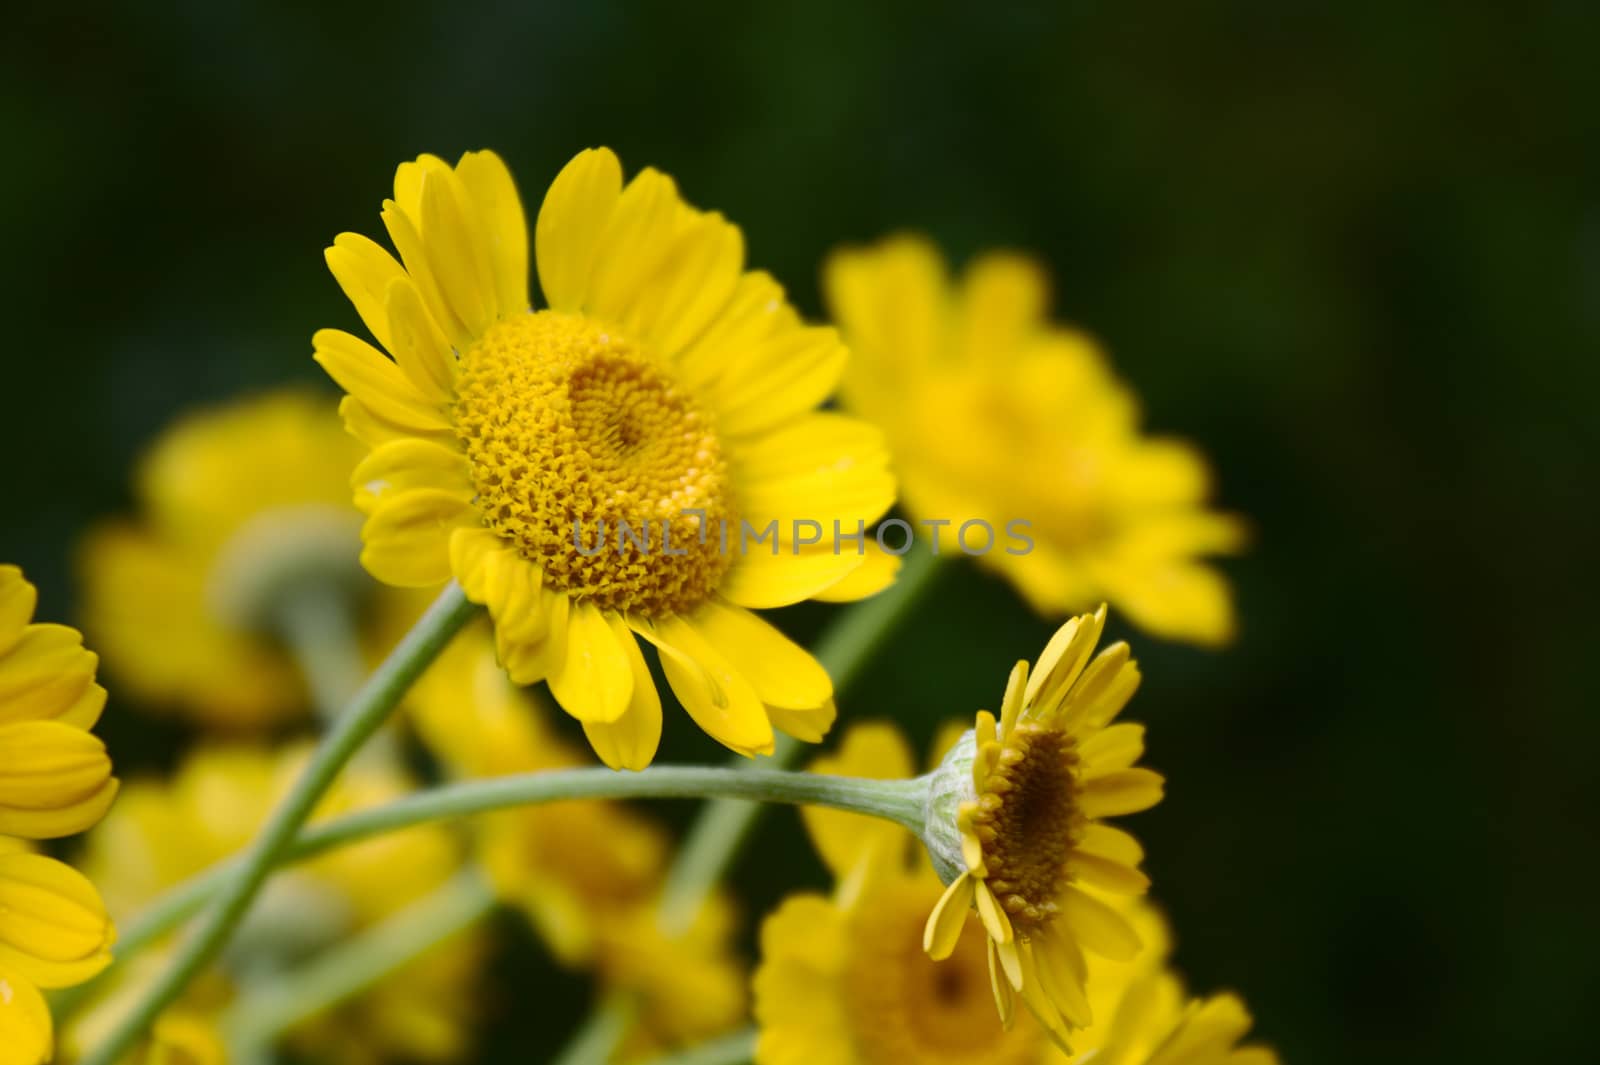 yellow flowers in the garden by martina_unbehauen